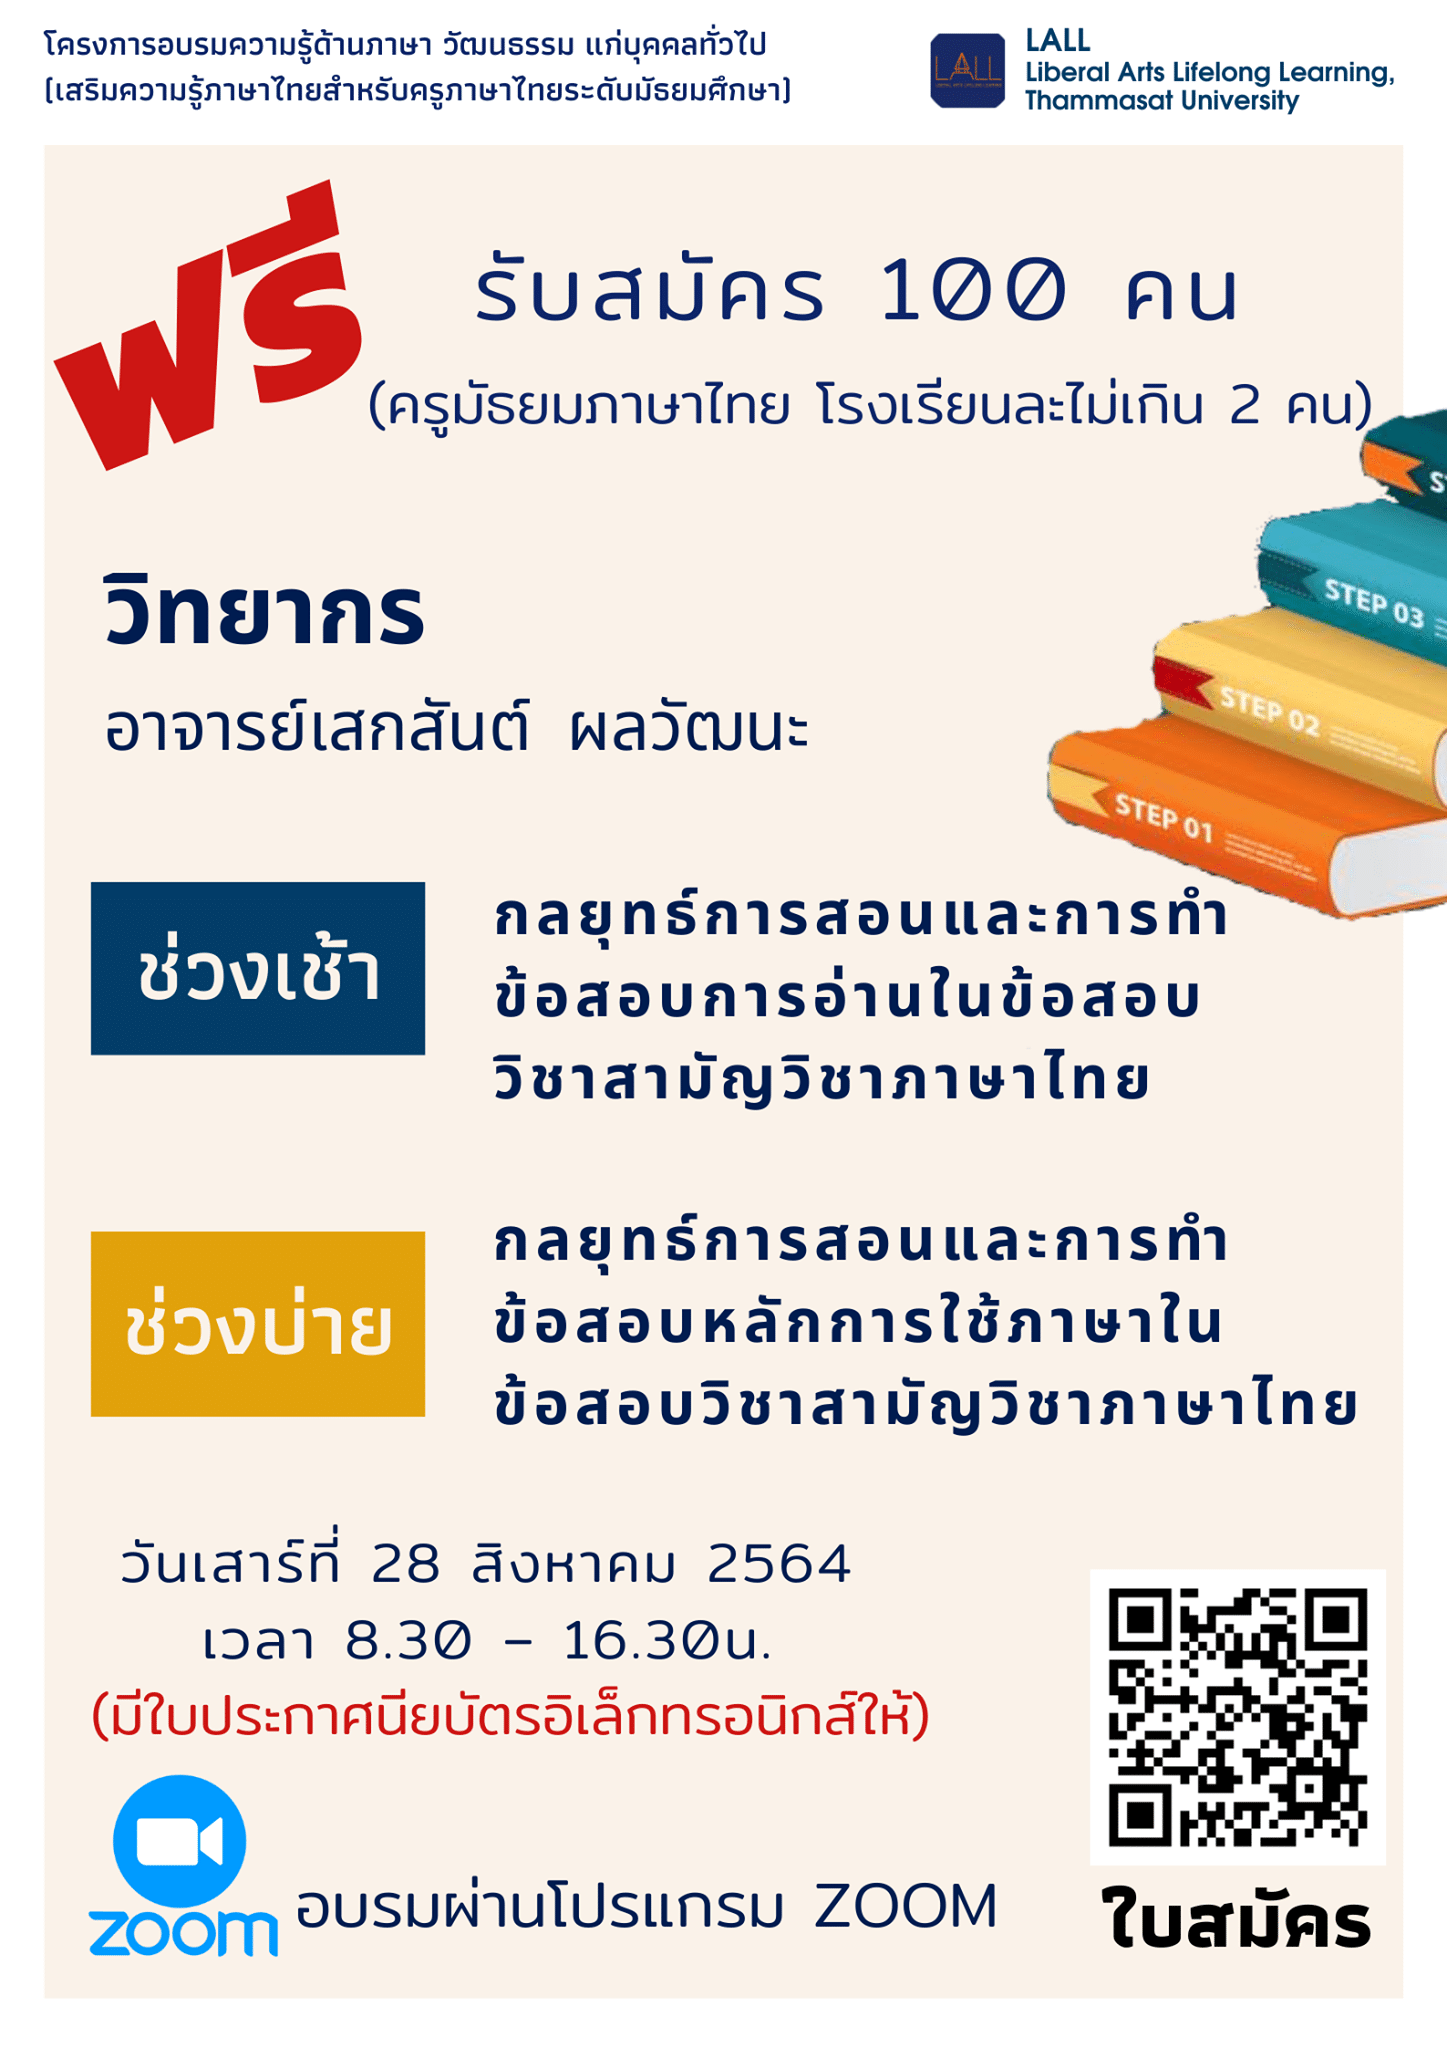 อบรมฟรี!! เสริมความรู้ภาษาไทยสำหรับครูภาษาไทยระดับมัธยมศึกษา วันเสาร์ที่ 28 สิงหาคม 2564 โดยคณะศิลปศาสตร์ ธรรมศาสตร์ รับสมัครจำนวน 100 คน (ครูมัธยมภาษาไทย โรงเรียนละไม่เกิน 2 คน)